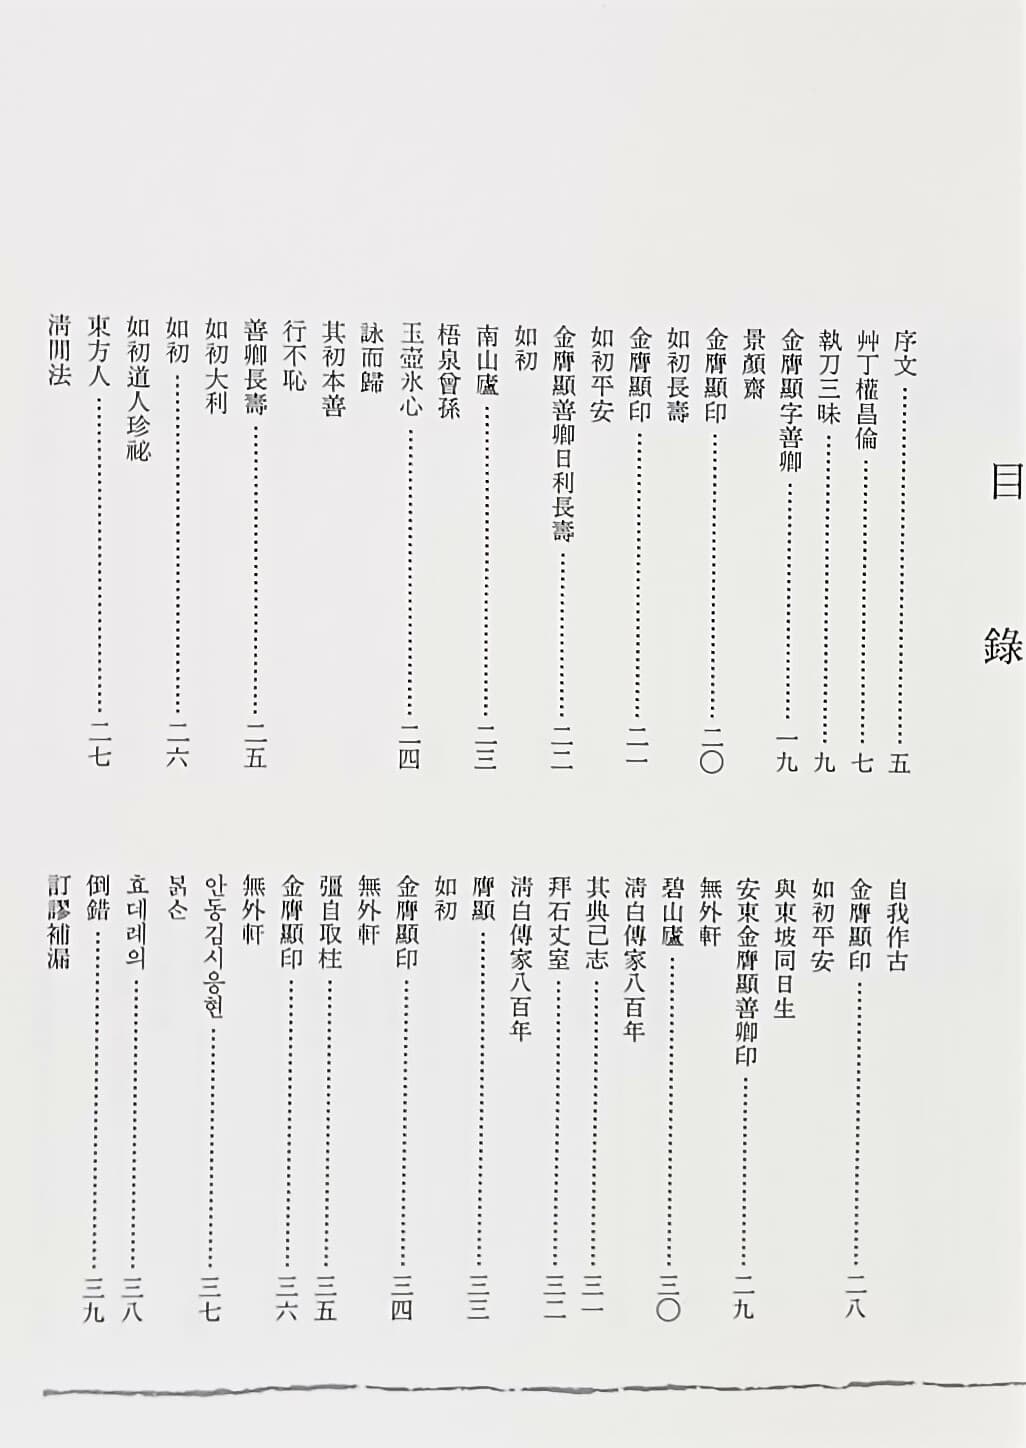 김응현인존 -서예,전각,전서,도장관련- 195/265/25, 163쪽,하드커버-미사용 새책-아래사진참조-